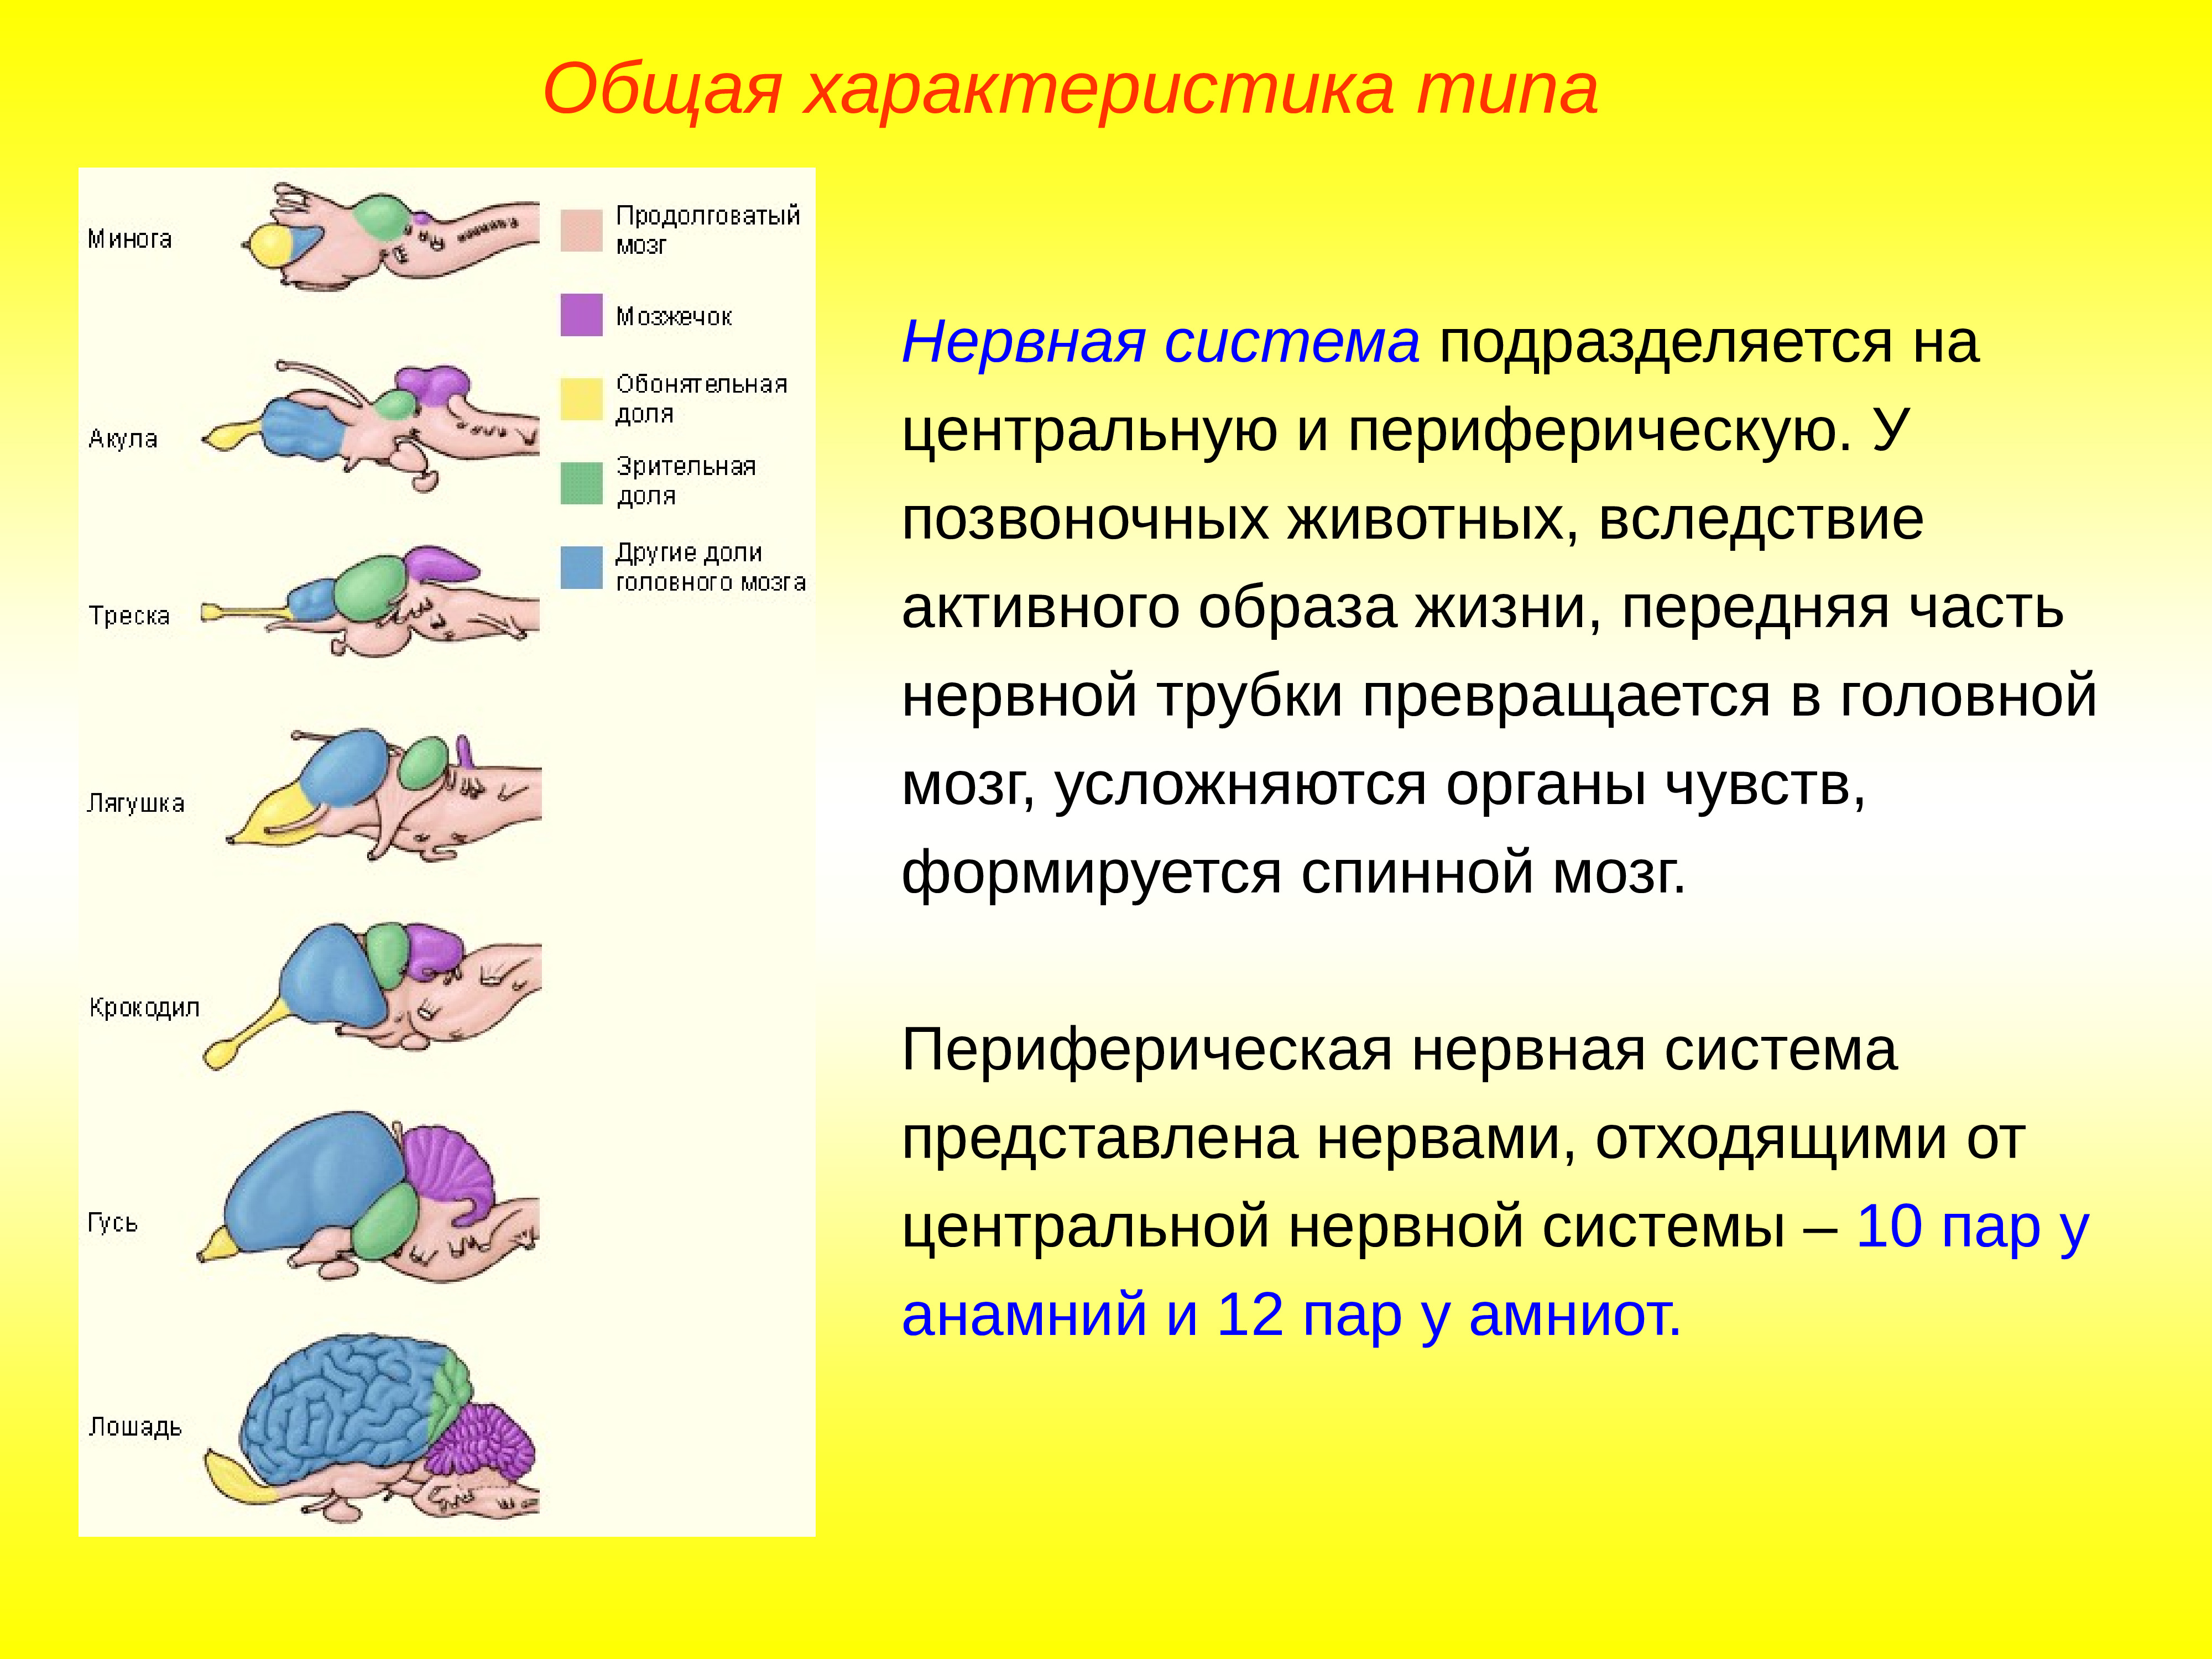 Нервная система позвоночных животных